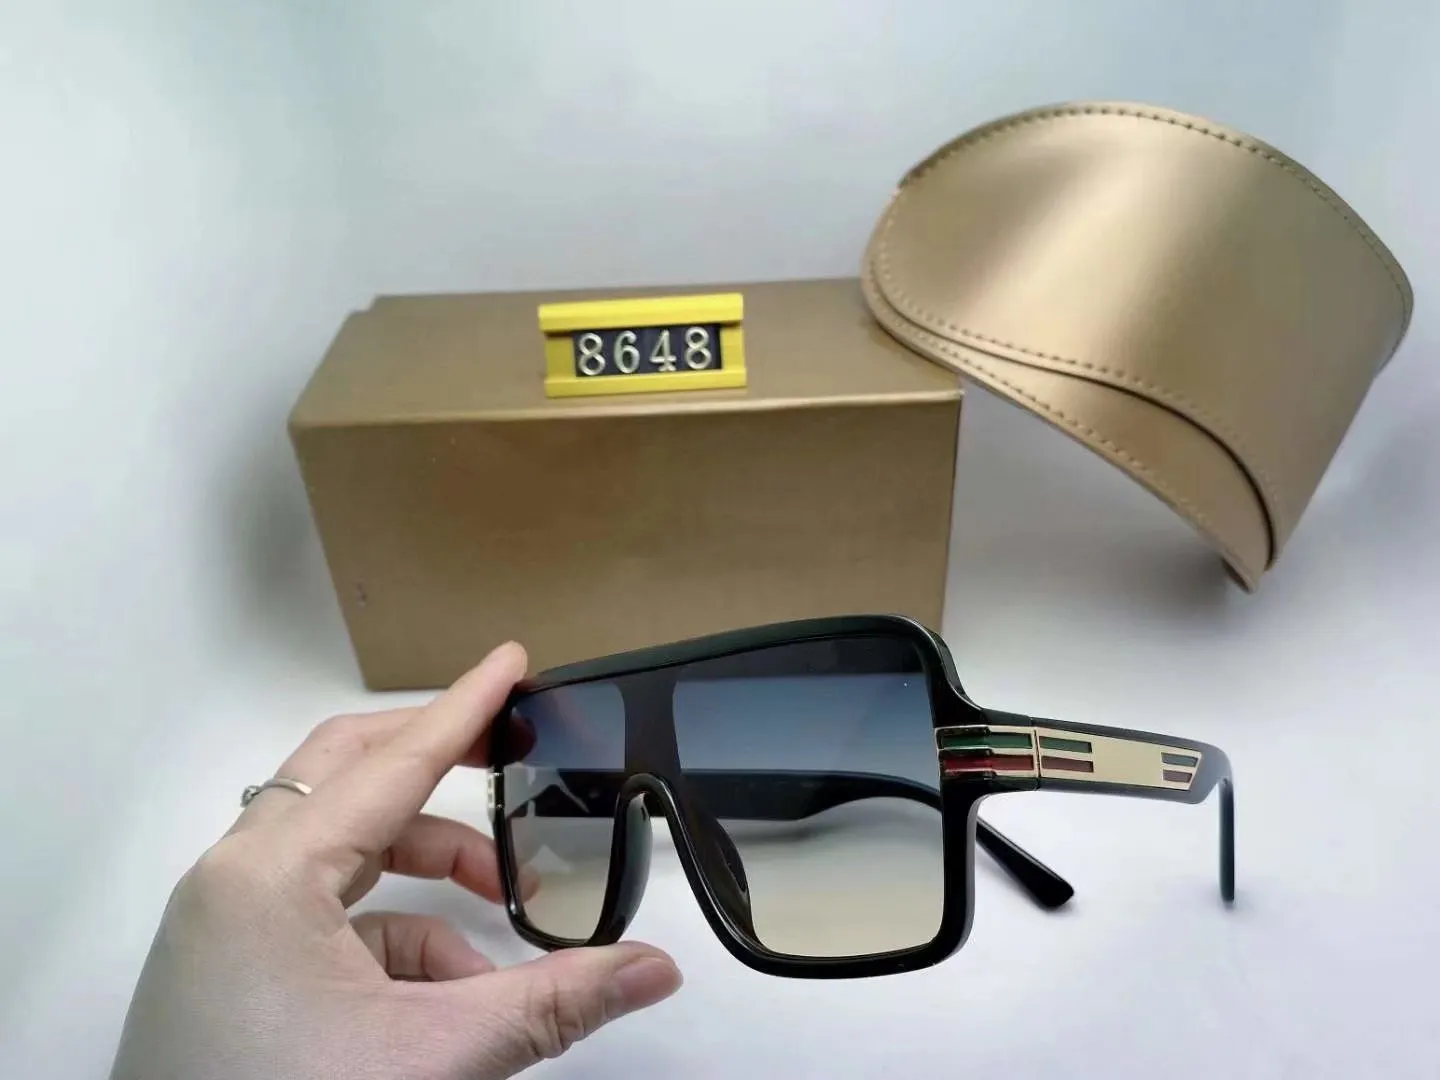 Designer de luxo óculos de sol mulheres 8648 moda óculos de sol quadrado estilo de verão quadro completo qualidade de proteção UV Sunglasse vêm com caixa